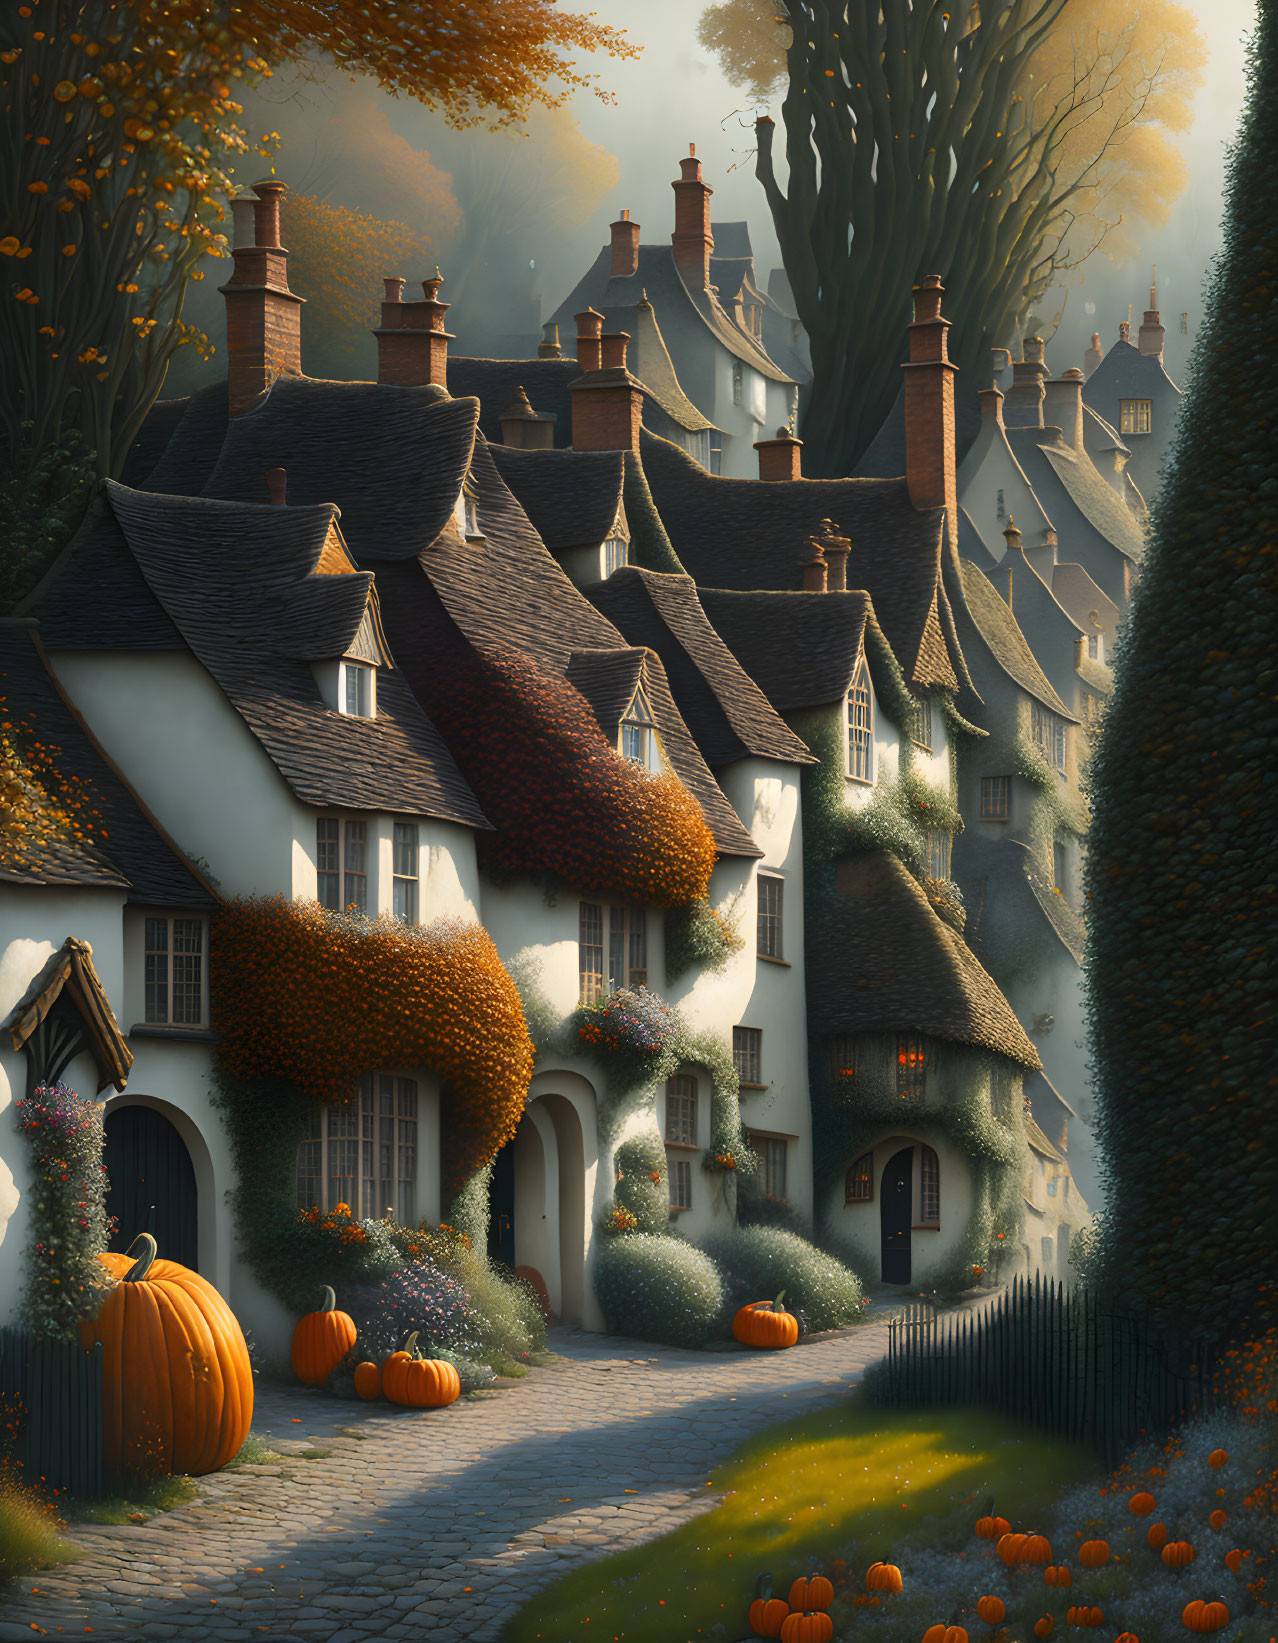 An Autumn Village